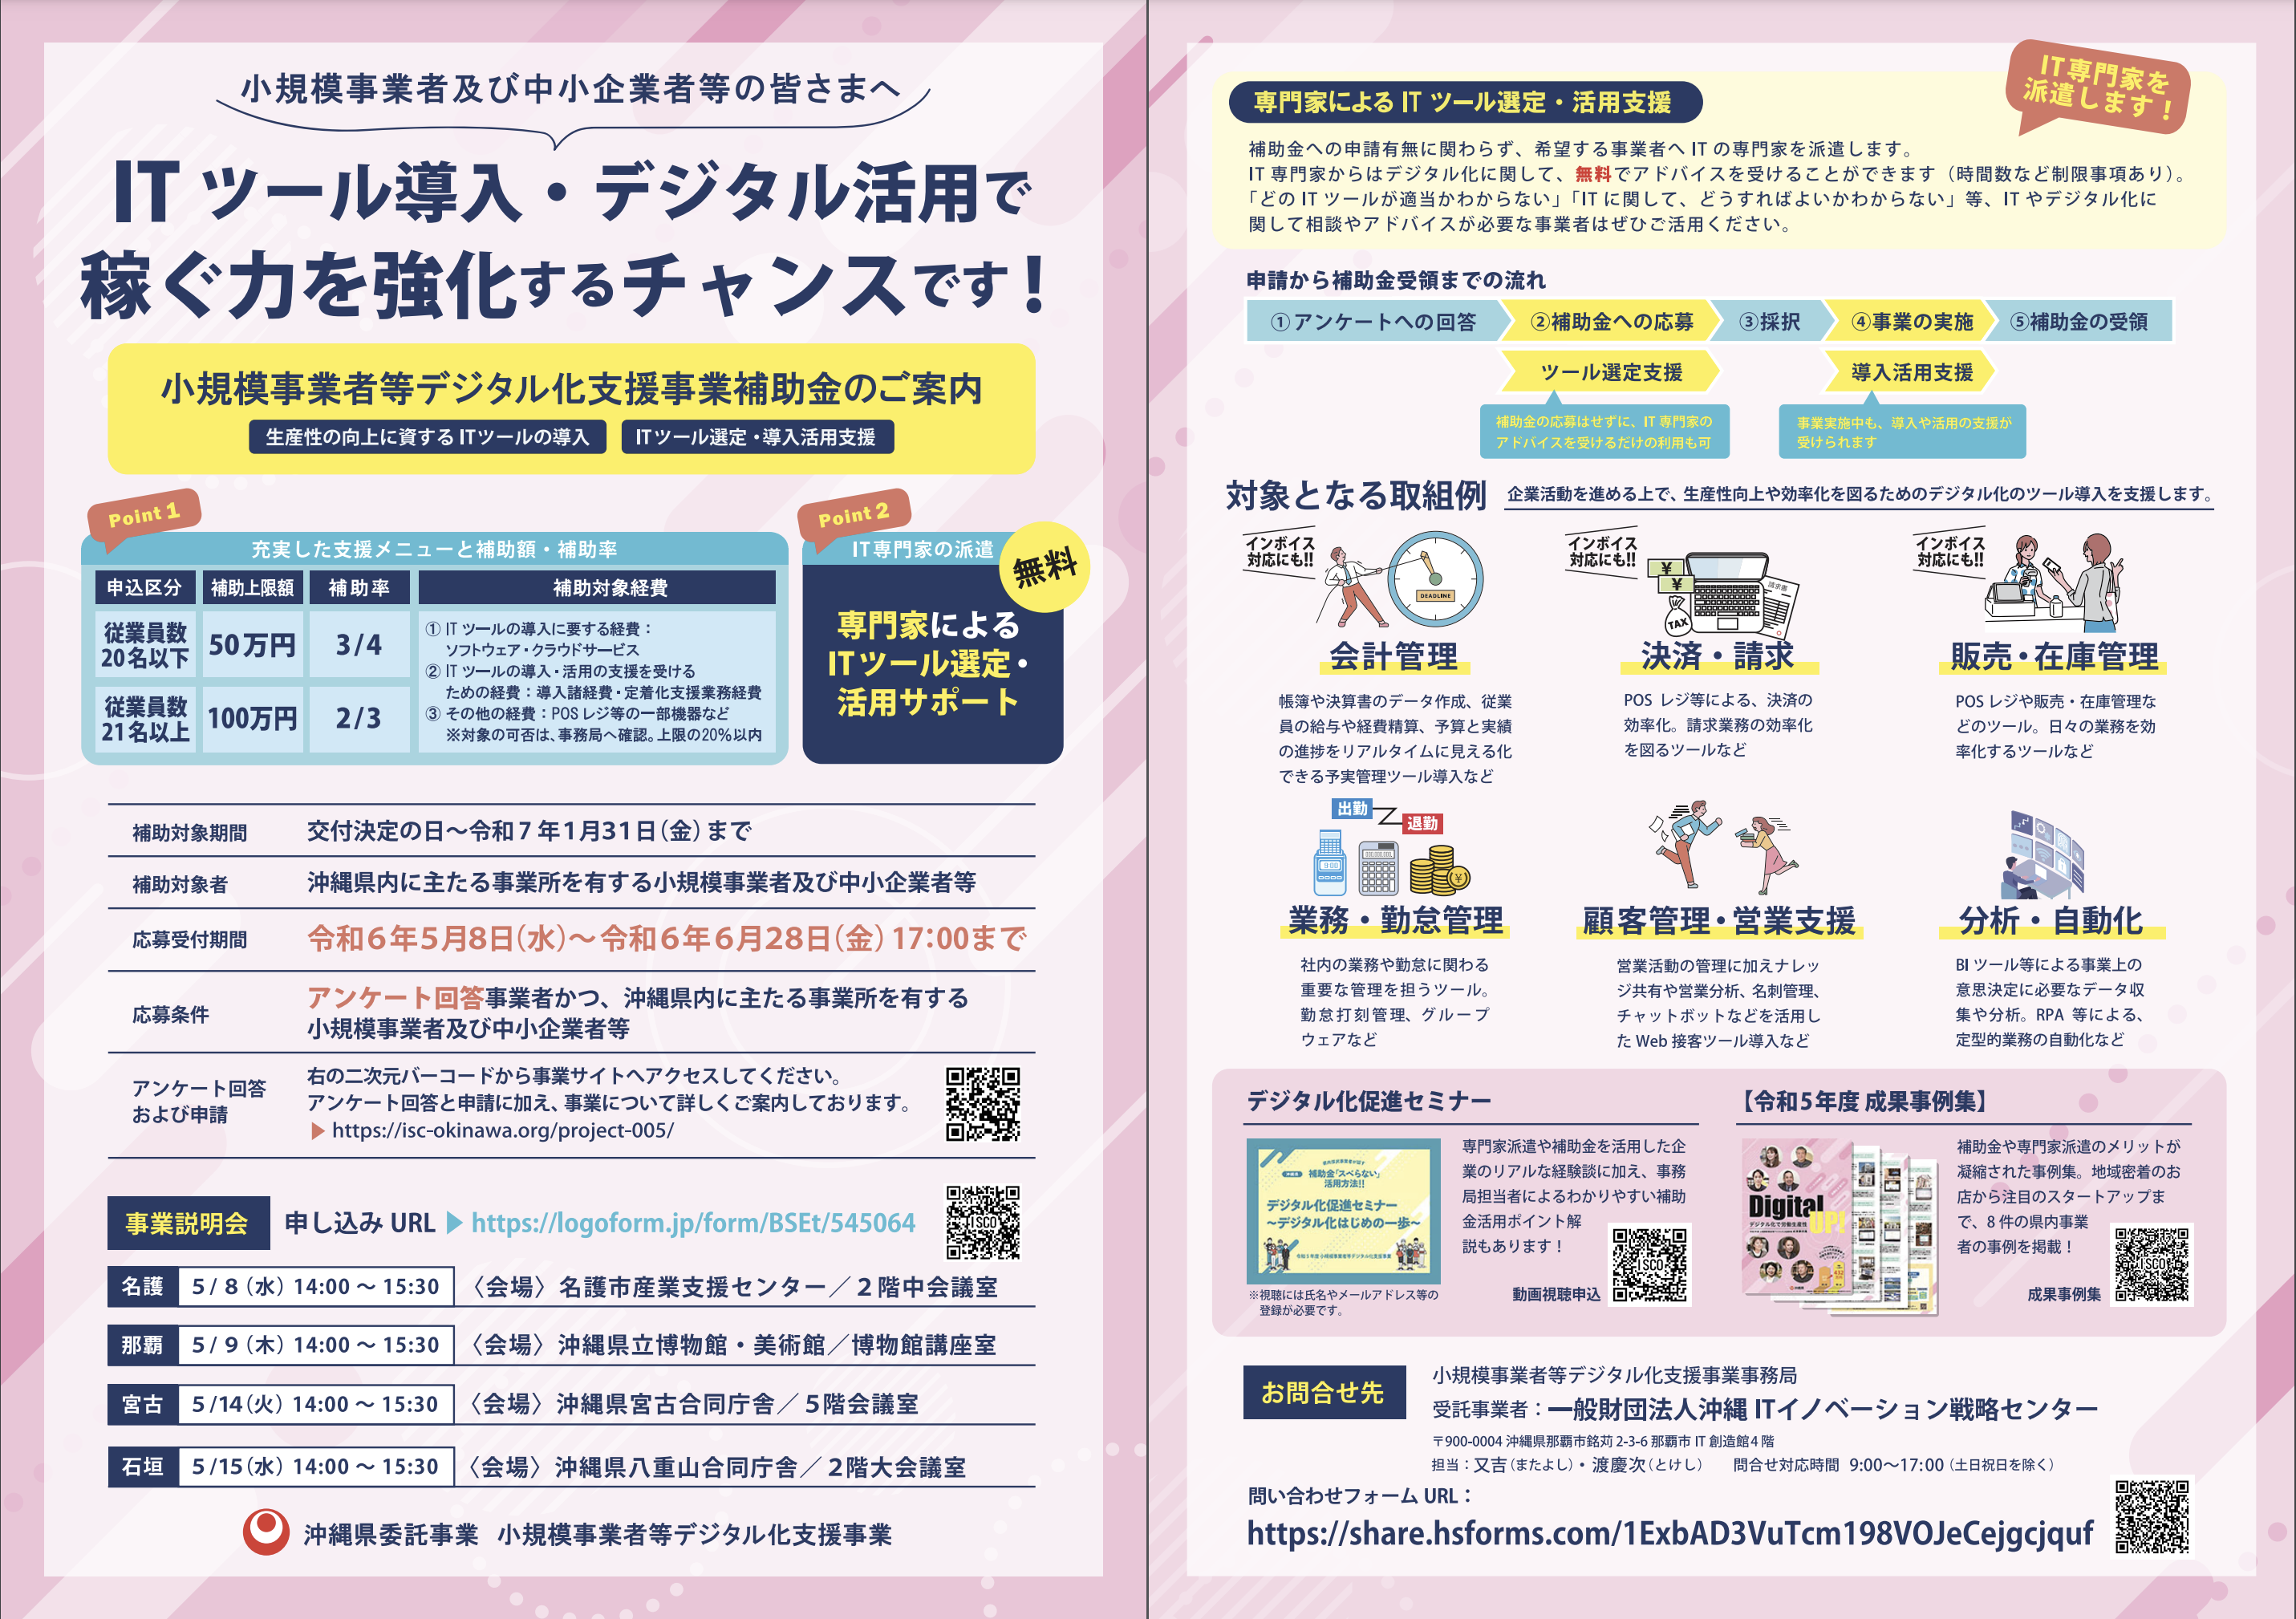 沖縄県 小規模事業者等デジタル化支援事業 補助金リーフレット